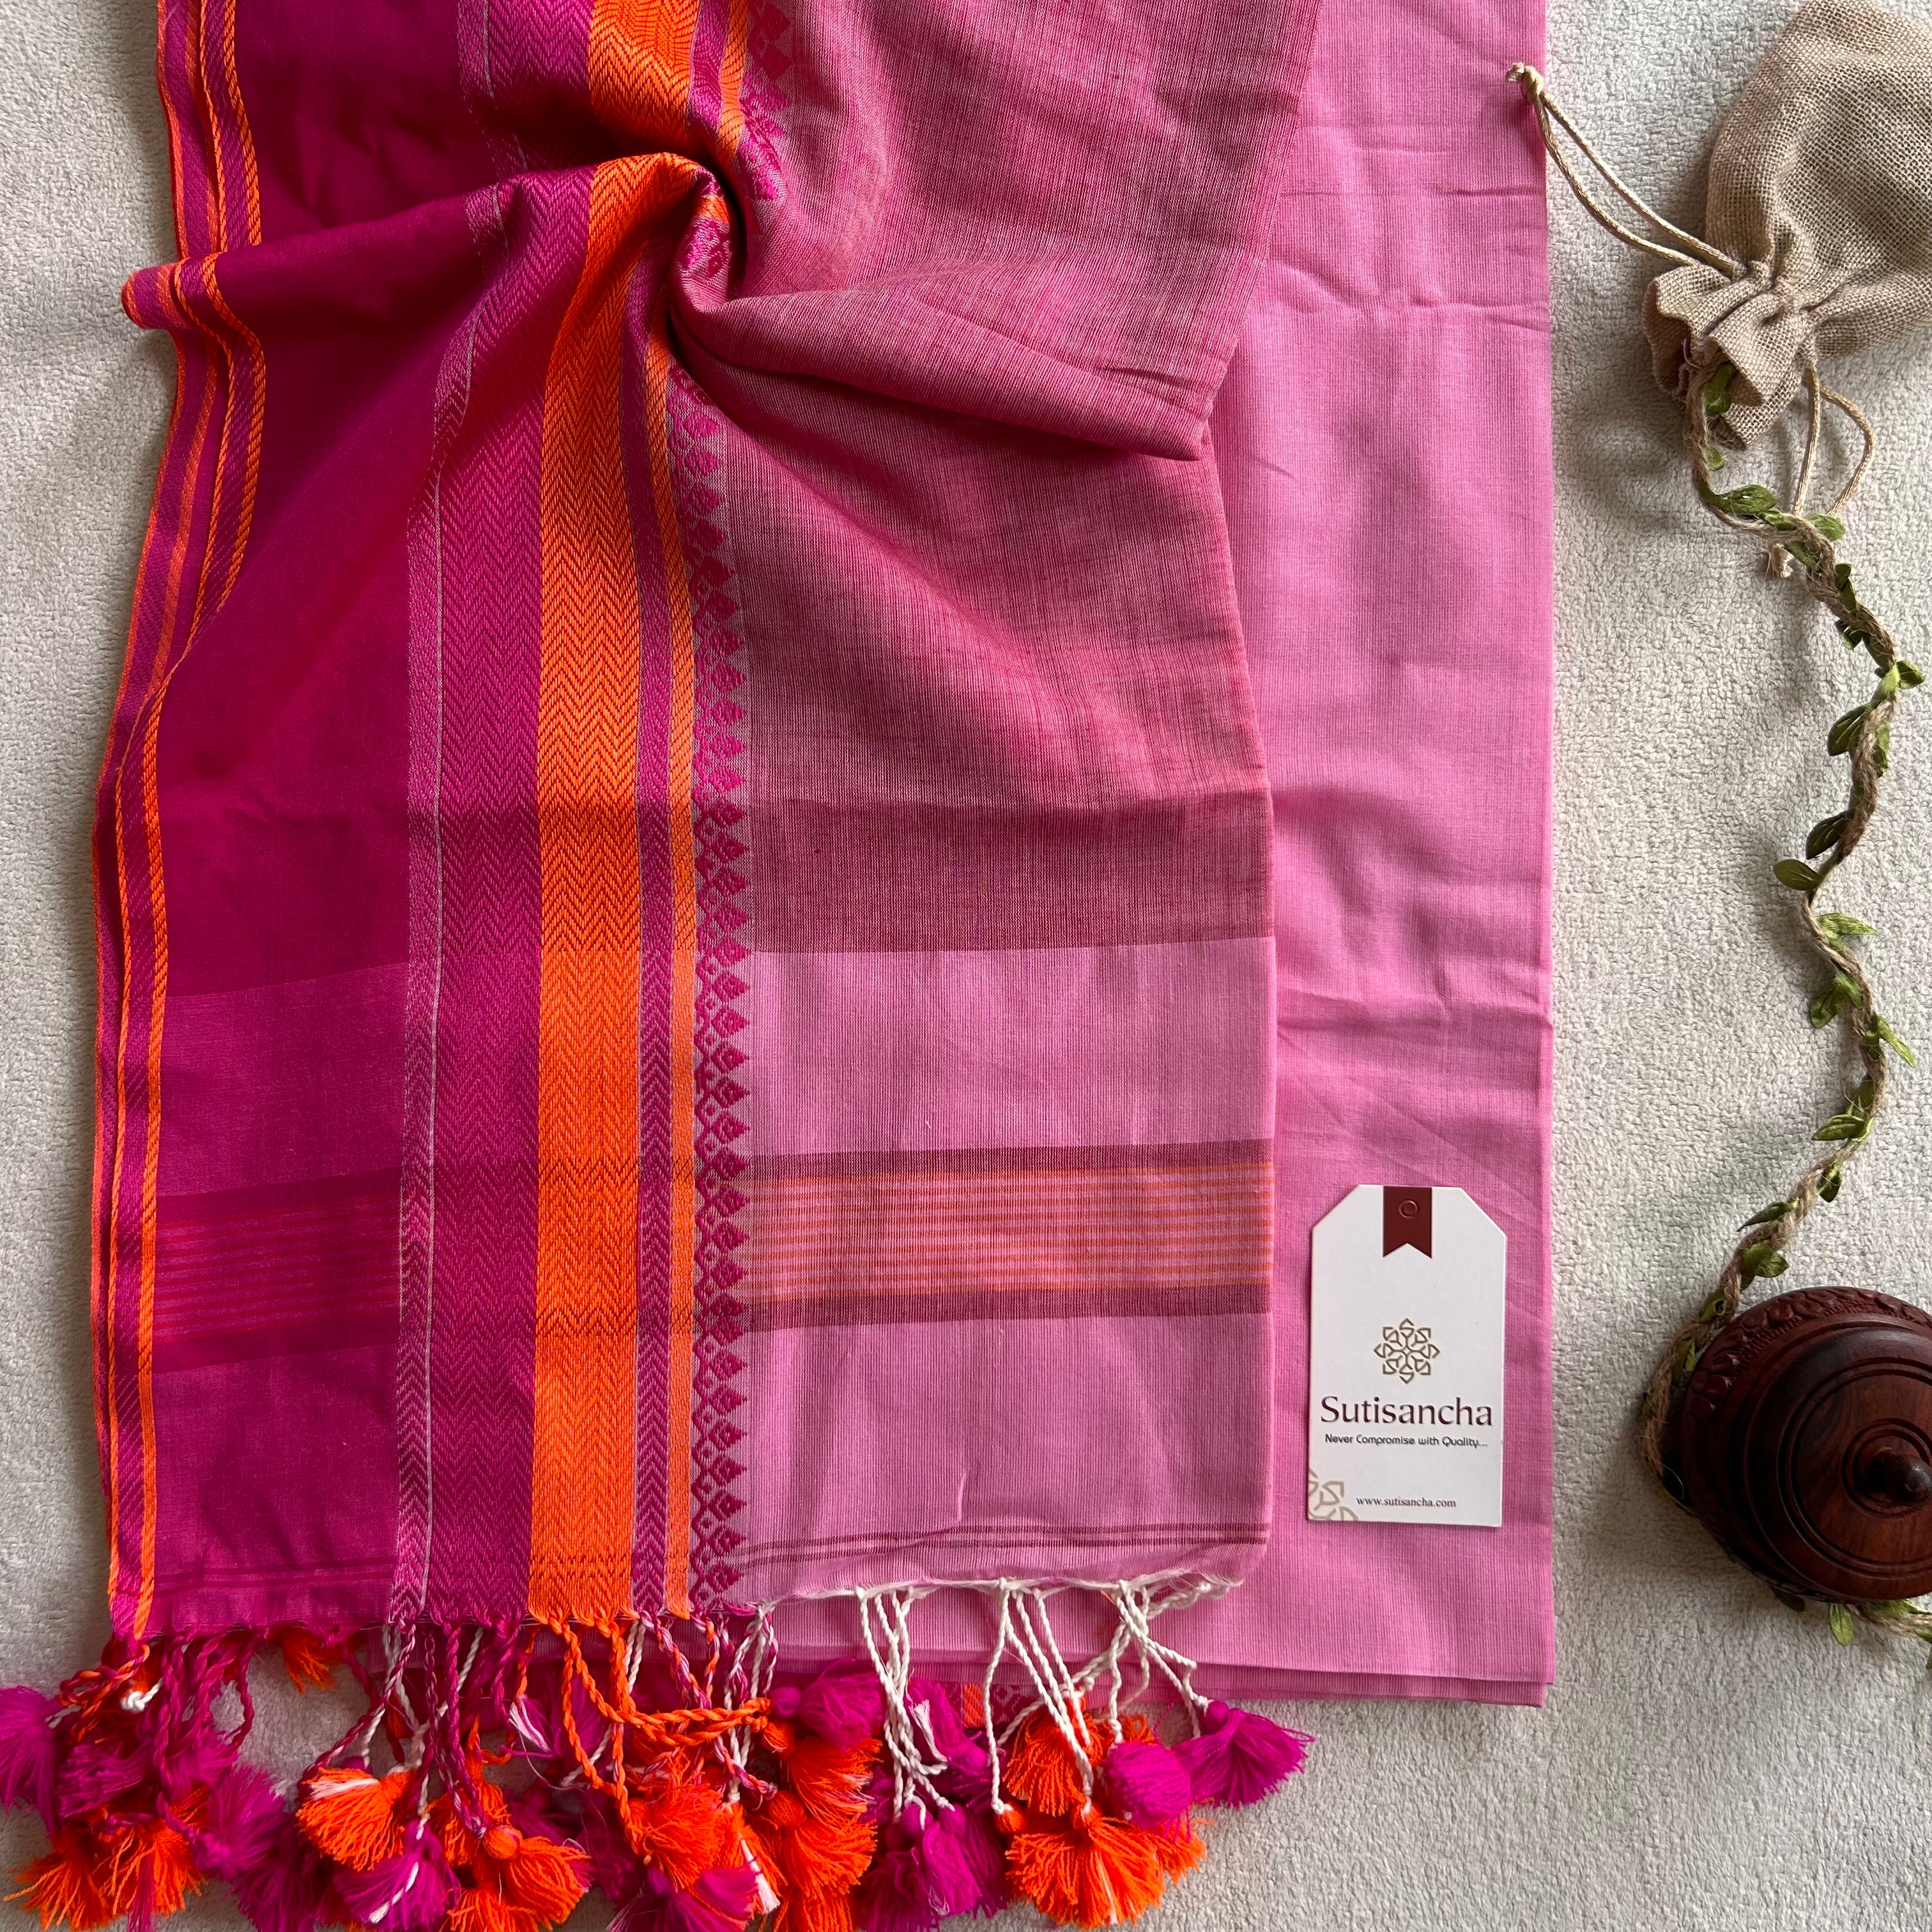 Sutisancha Handwoven Bliss Bengal Cotton Saree